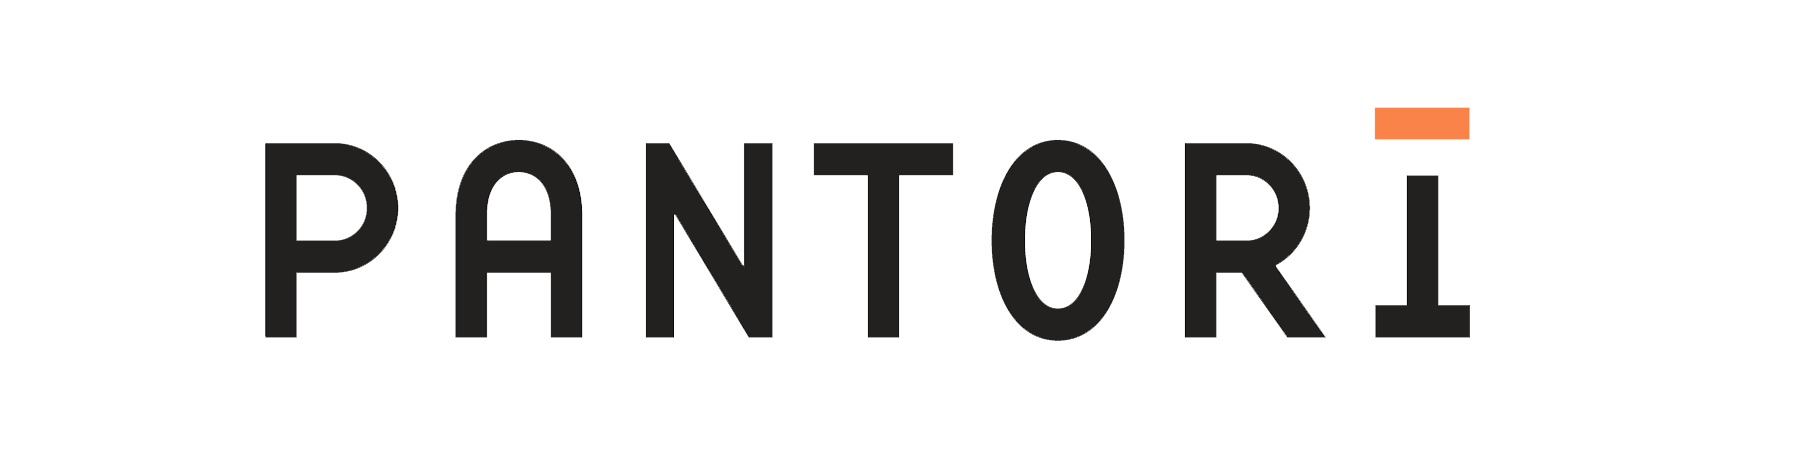 Pantori logo